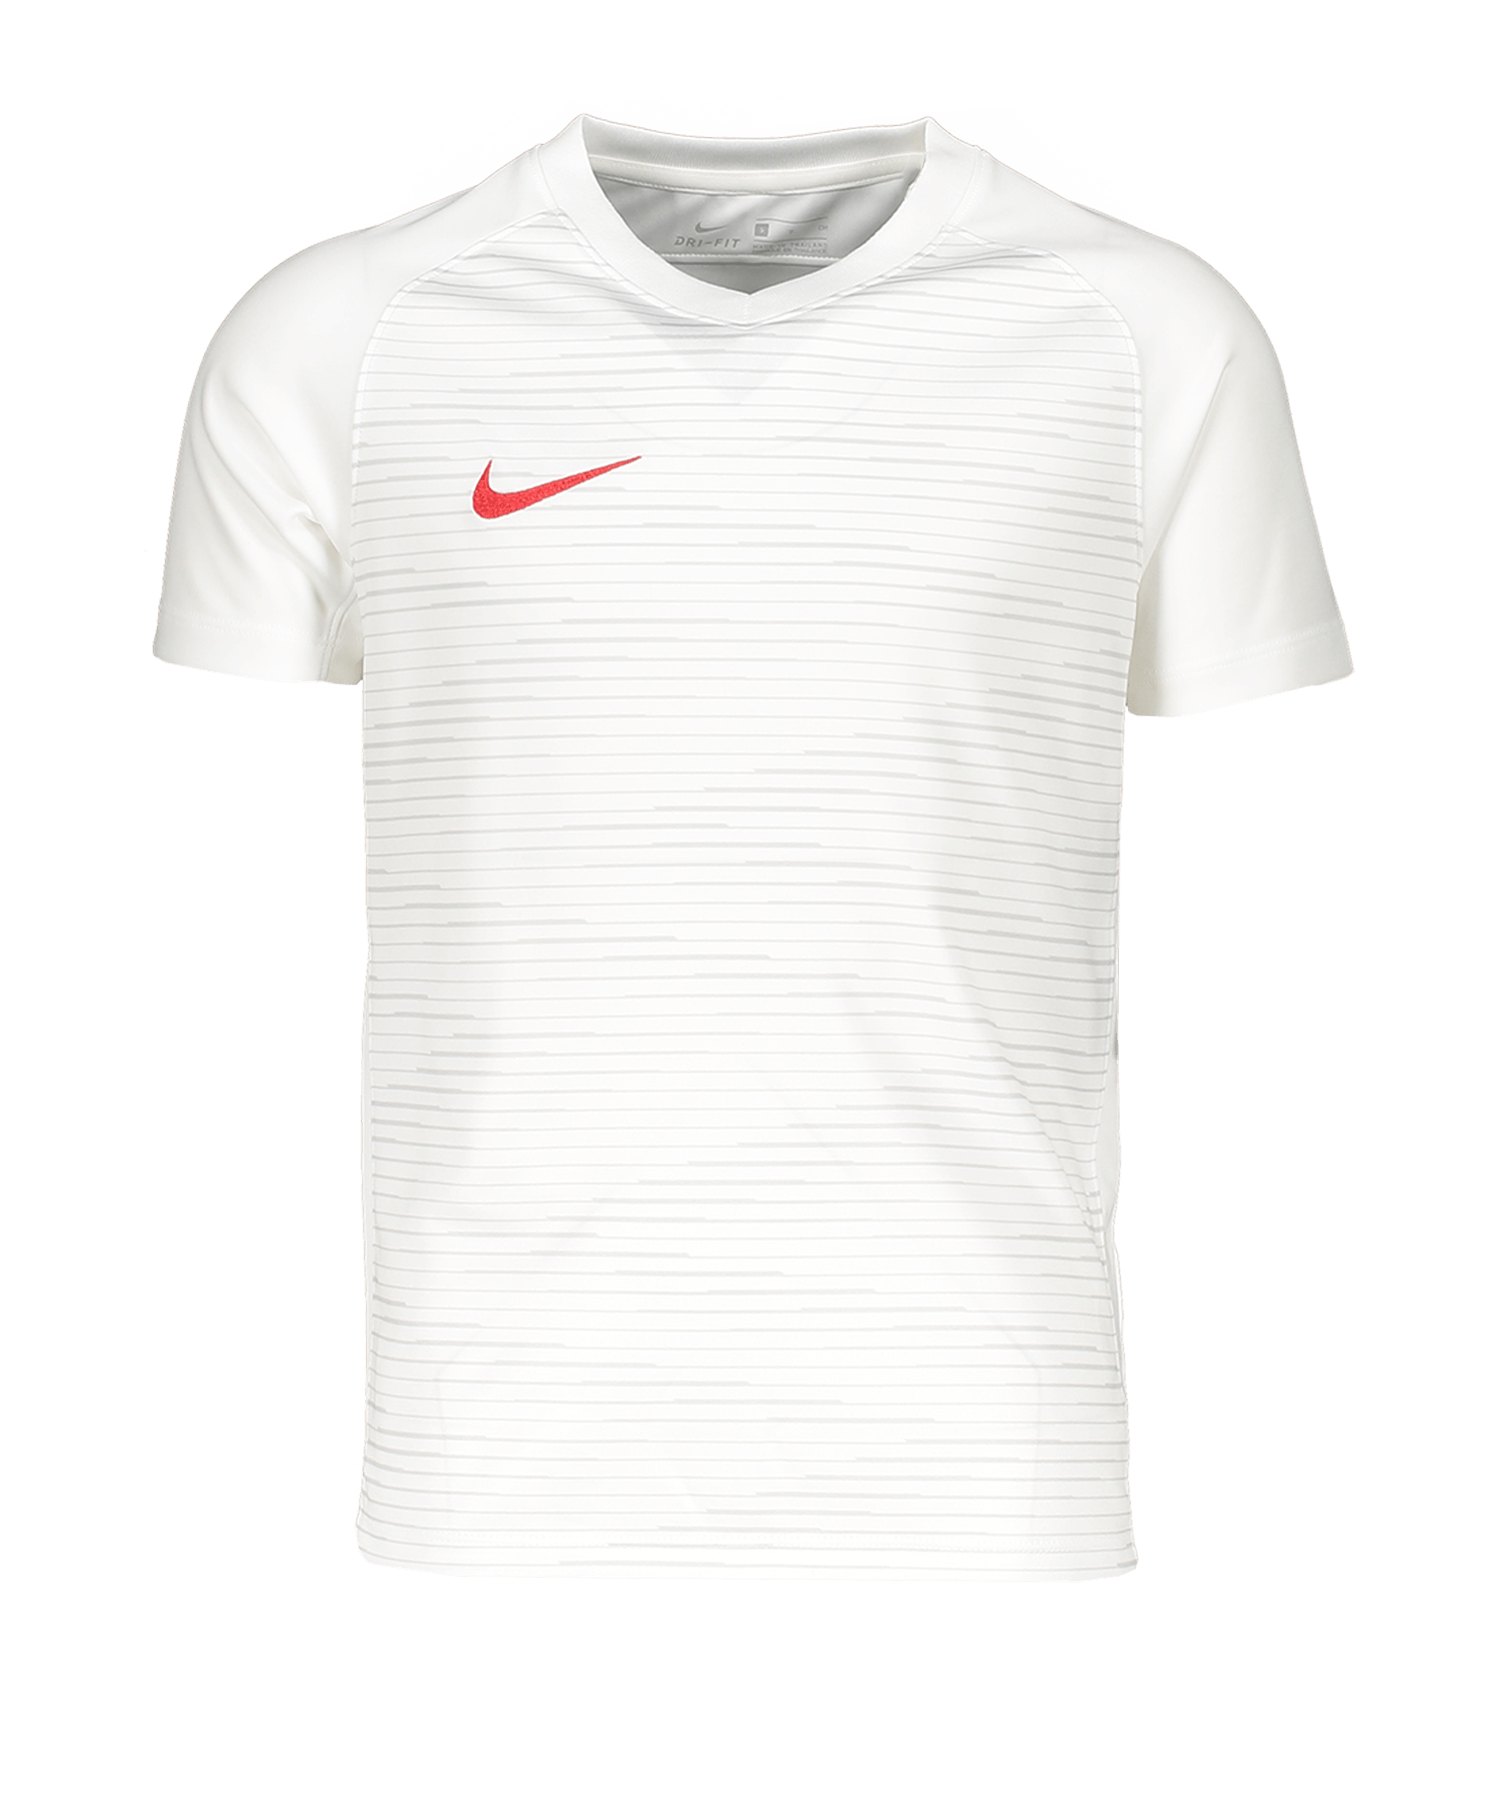 Nike Graphics 3 T-Shirt Kids Grau Weiss F043 - grau